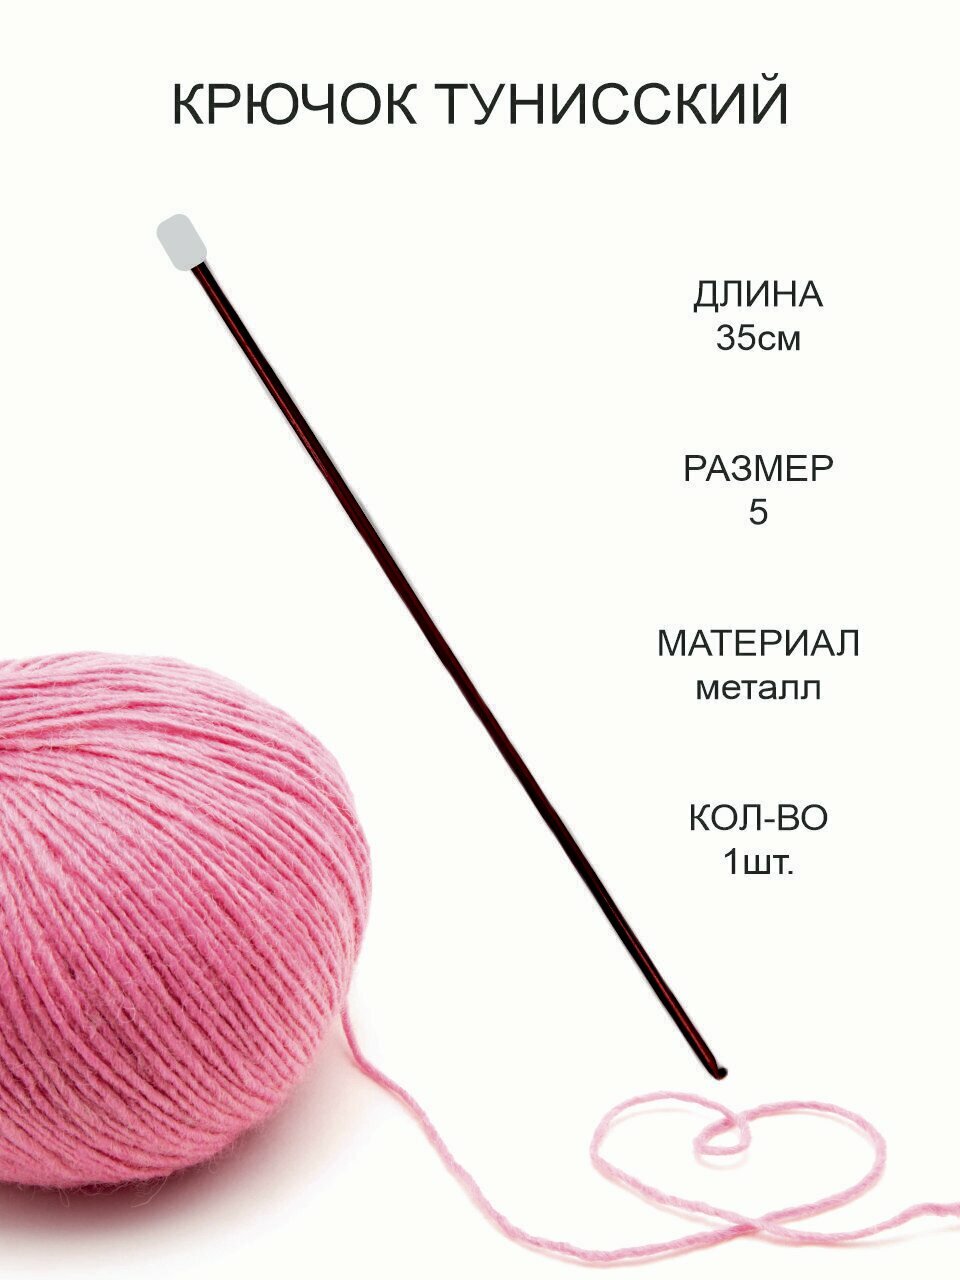 Крючок для тунисского вязания, металл, диаметр 5 мм, длина 35 см / Крючок для вязания Афганский с тефлоновым покрытием